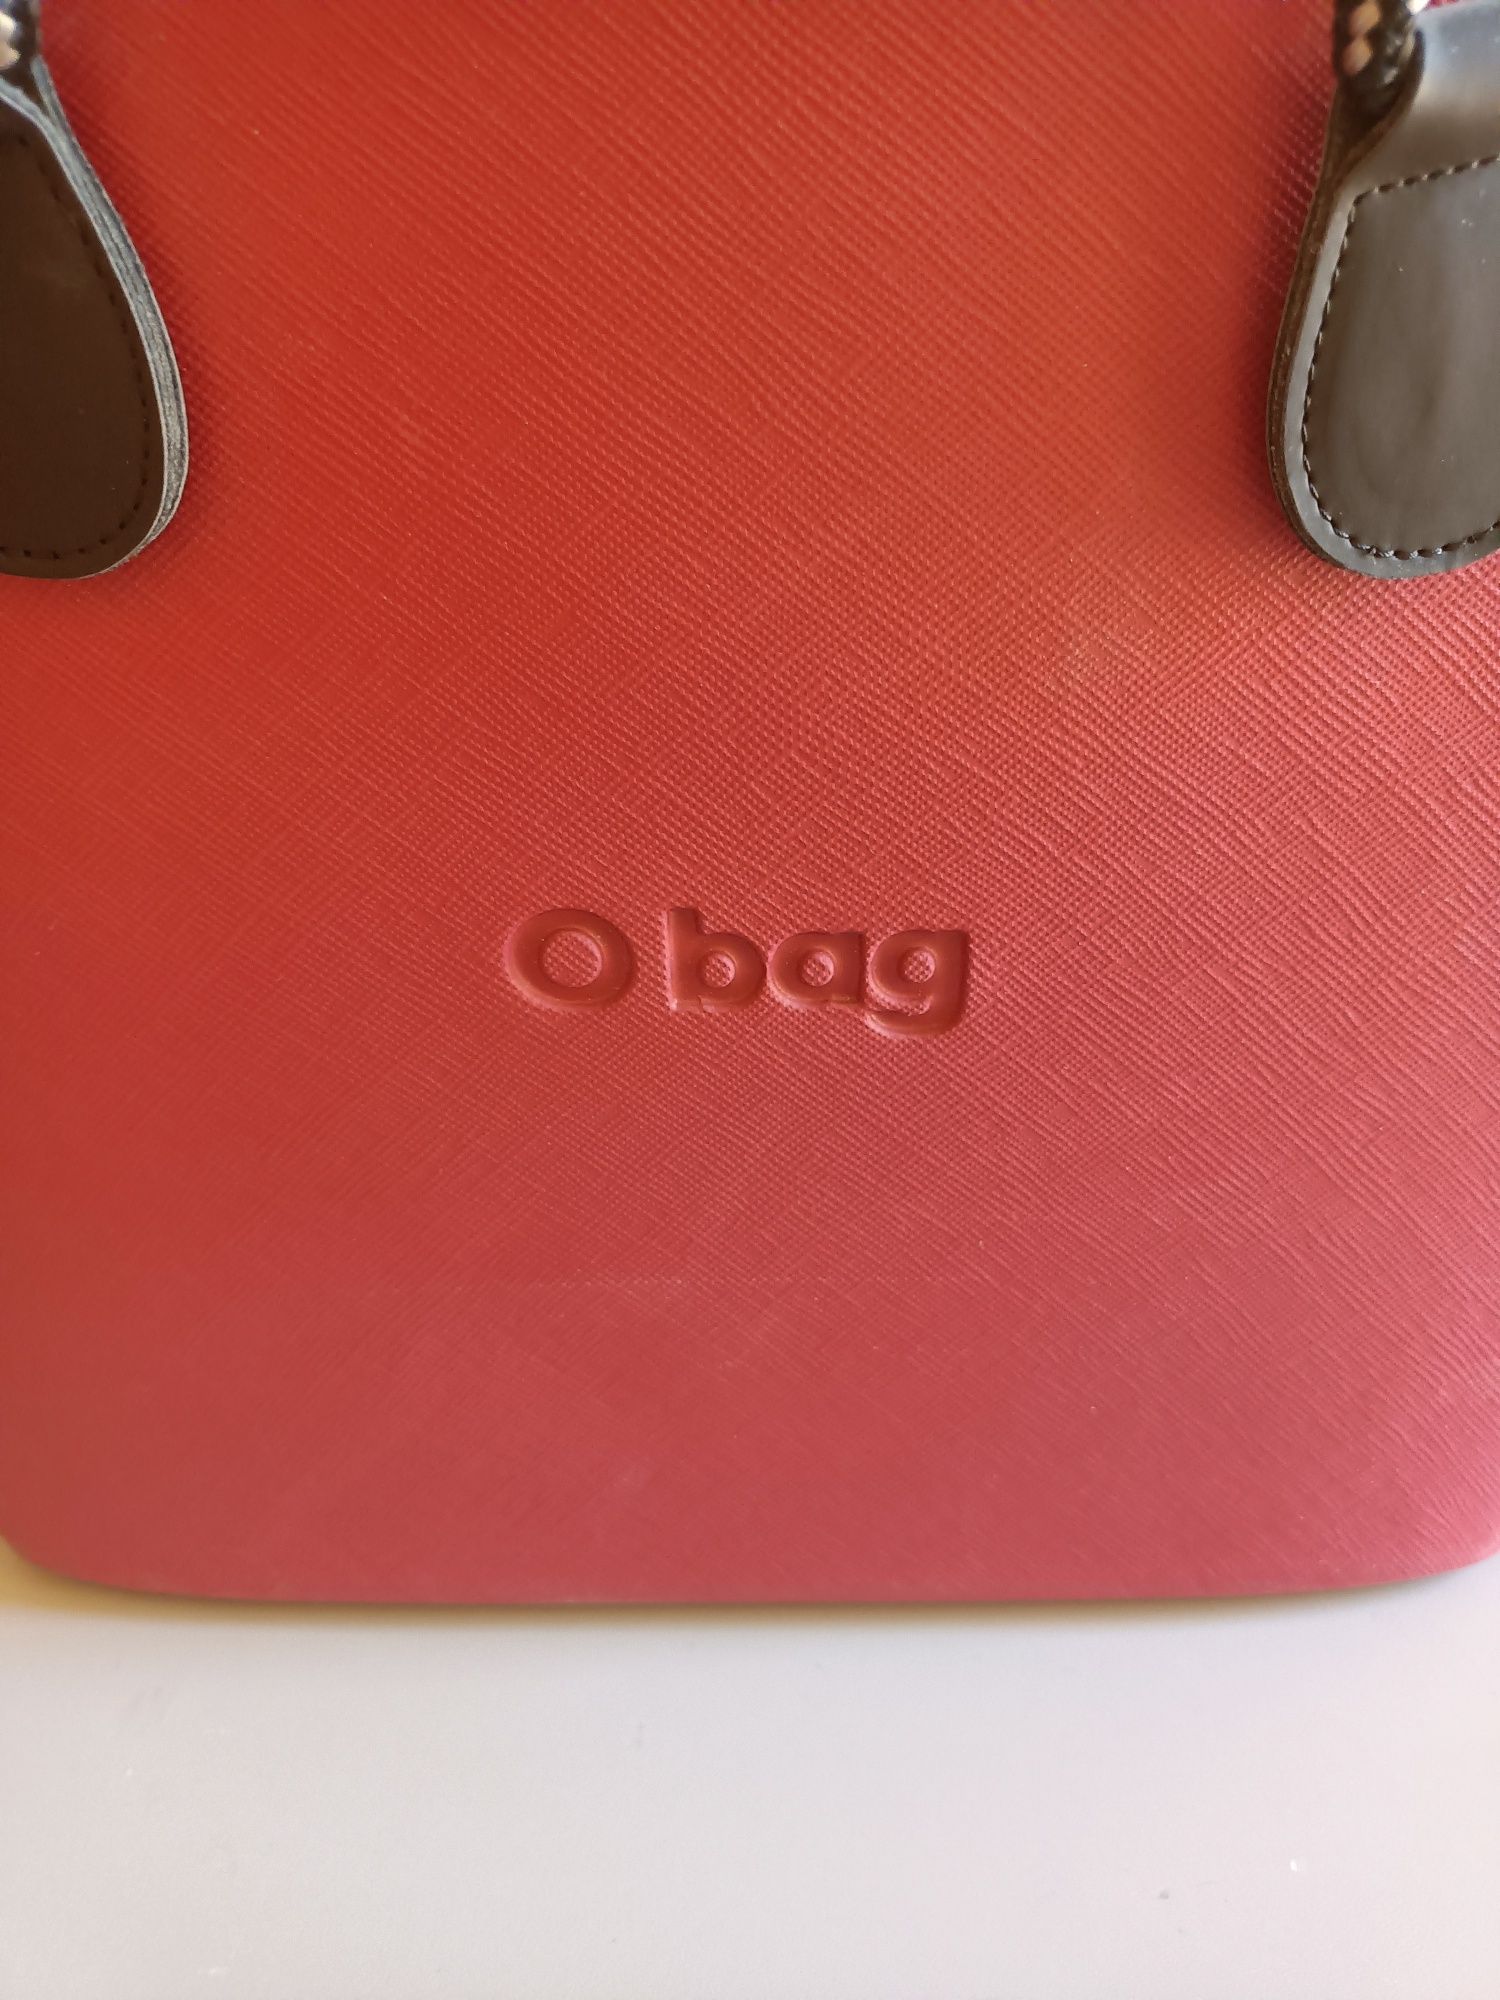 Koszyk firmy  O bag